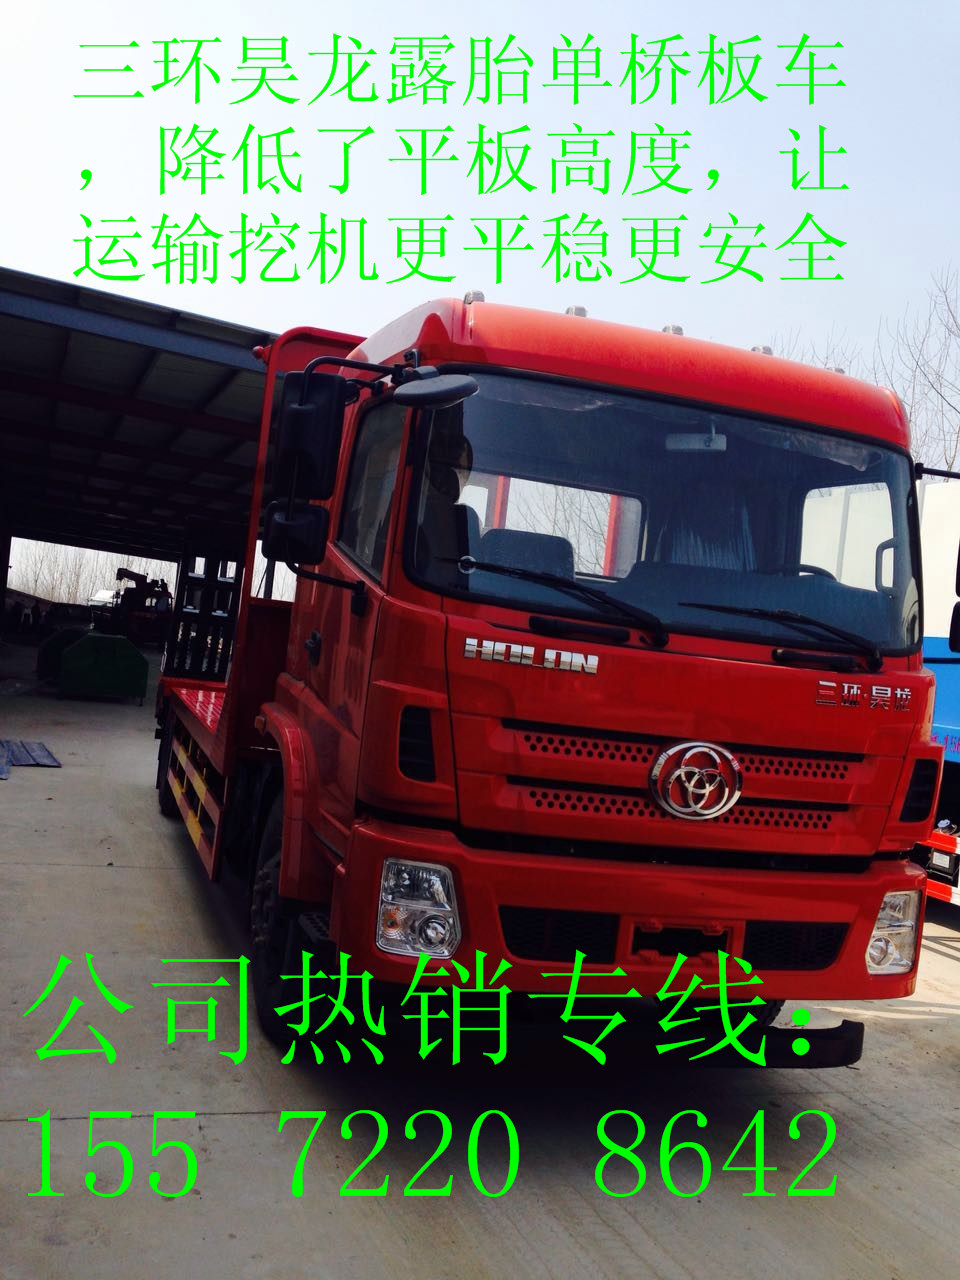 公司特价销售三环昊龙国五露胎平板运输车平板车价格低平板运输车平板